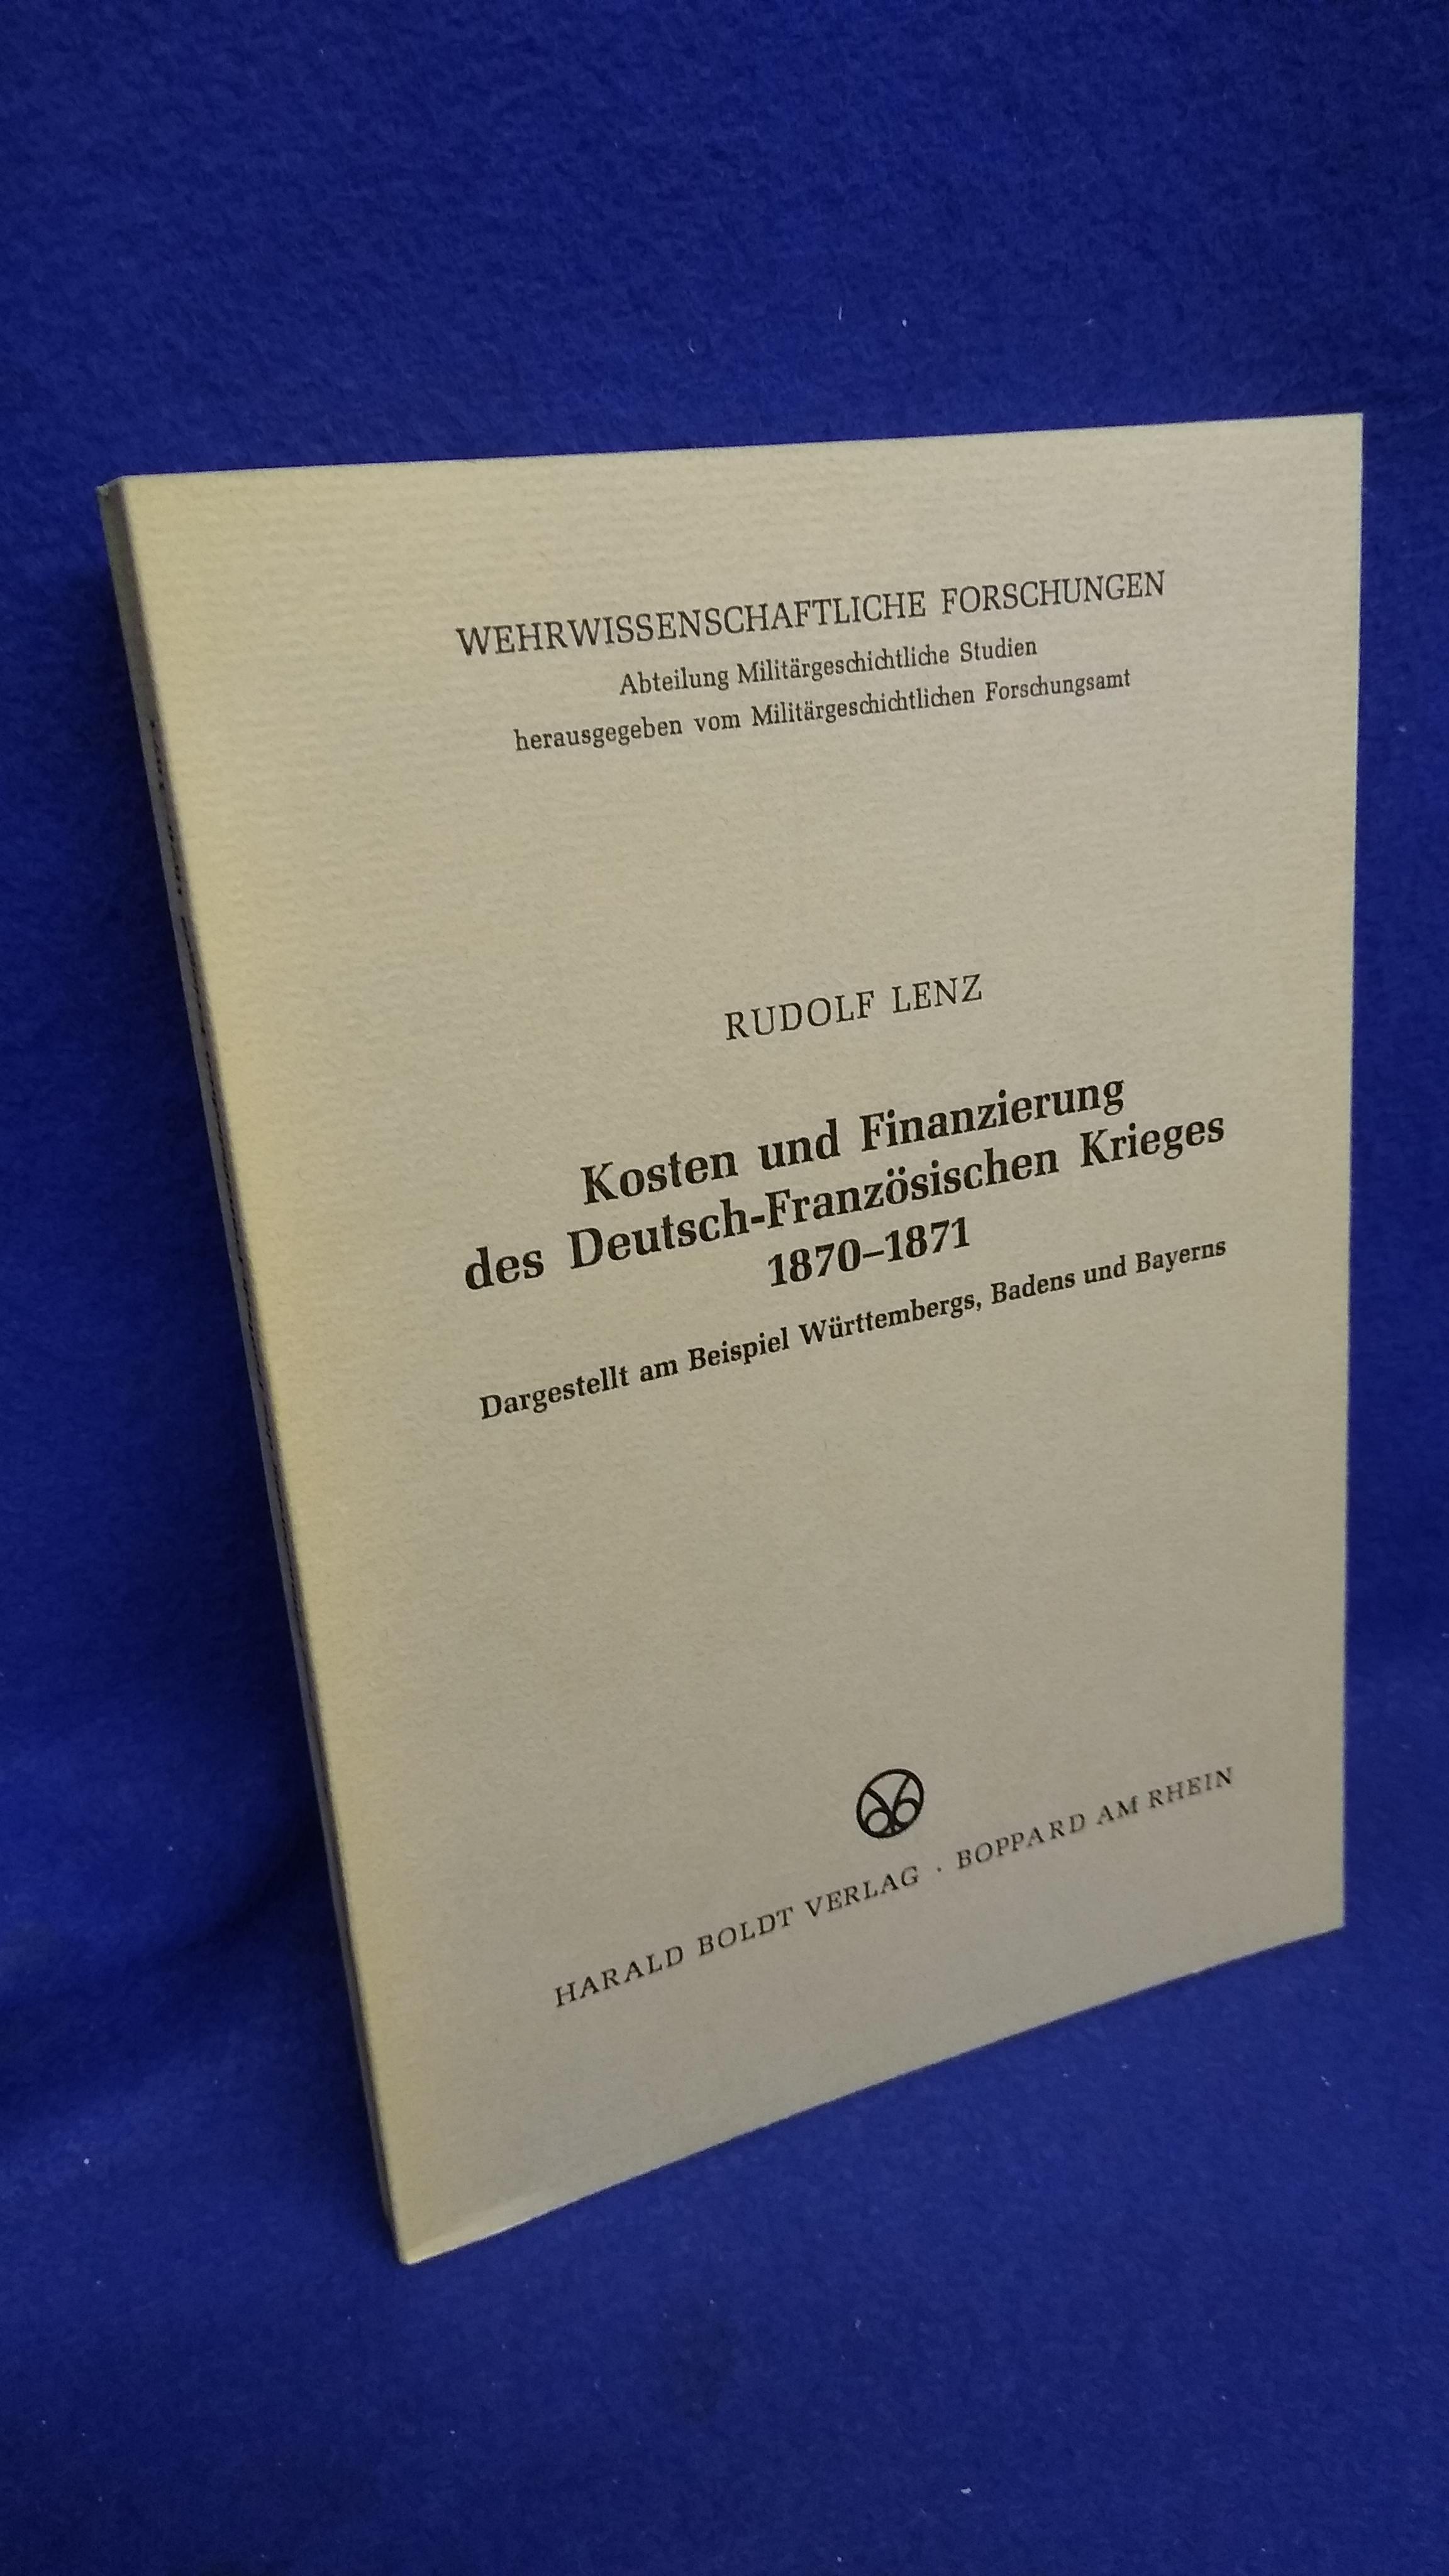 Kosten und Finanzierung des Deutsch-Französischen Krieges 1870 - 1871. Dargestellt am Beispiel Württembergs, Badens und Bayern. Seltenes Exemplar!